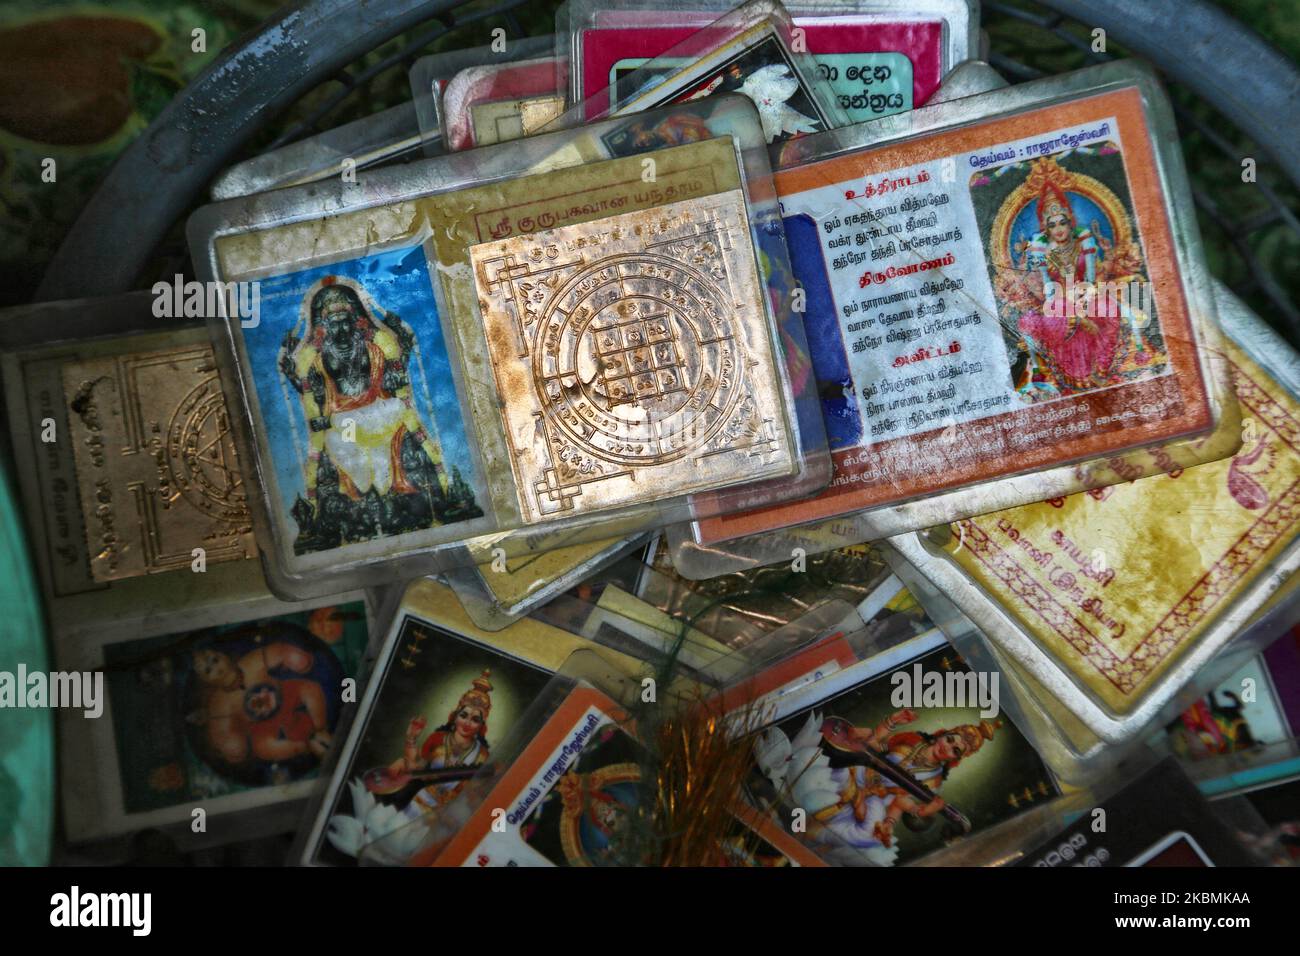 Articoli religiosi con le immagini delle divinità indù al tempio Kataragama di Kataragama, Sri Lanka, il 9 giugno 2017. Il tempio si trova sulla cima di una collina ed è una città di pellegrinaggio sacra per il popolo buddista, indù e indigeno Vedda dello Sri Lanka. Nonostante le differenze di casta e credo, molti srilankesi mostrano grande riverenza a Dio Kataragama. Essi lo onorano come una divinità molto potente e implorano aiuto divino per superare i loro problemi personali e credono che Dio Kataragama esiste ed è investito di un potere straordinario per aiutare coloro che si rivolgono a Lui con fede e devozione in tempi di difficoltà Foto Stock